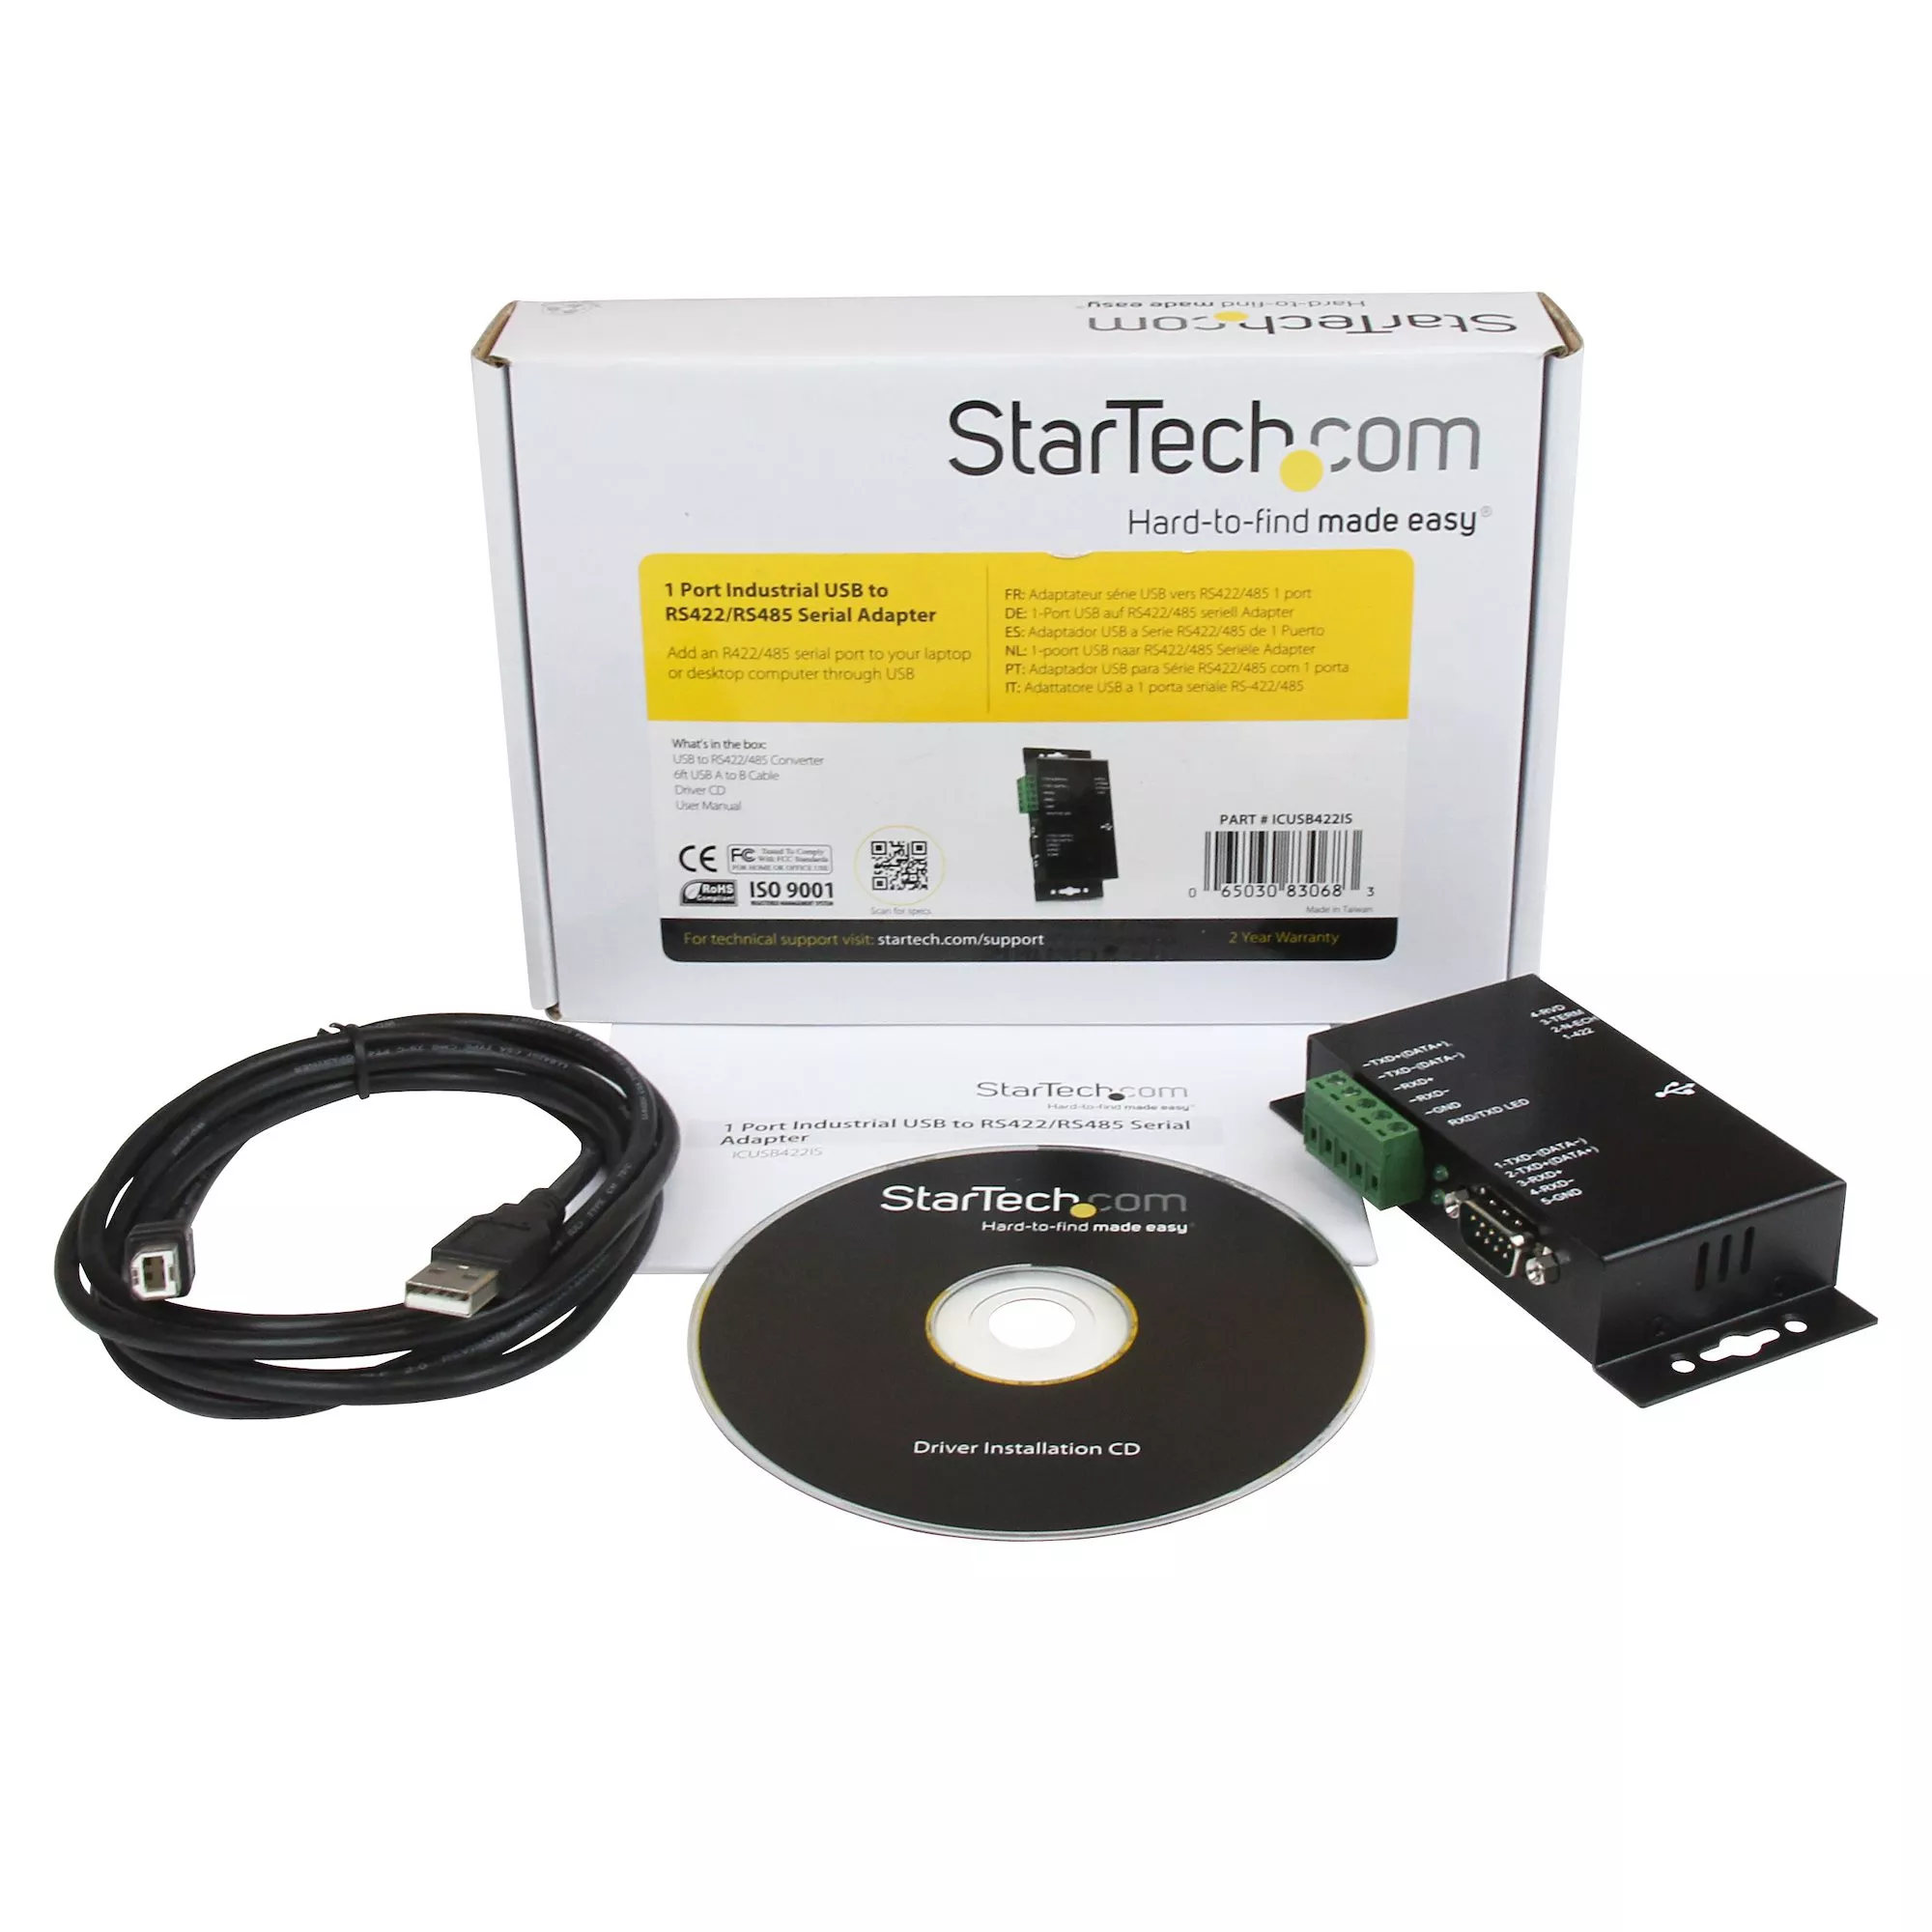 Vente StarTech.com Adaptateur industriel USB vers série DB9 StarTech.com au meilleur prix - visuel 4